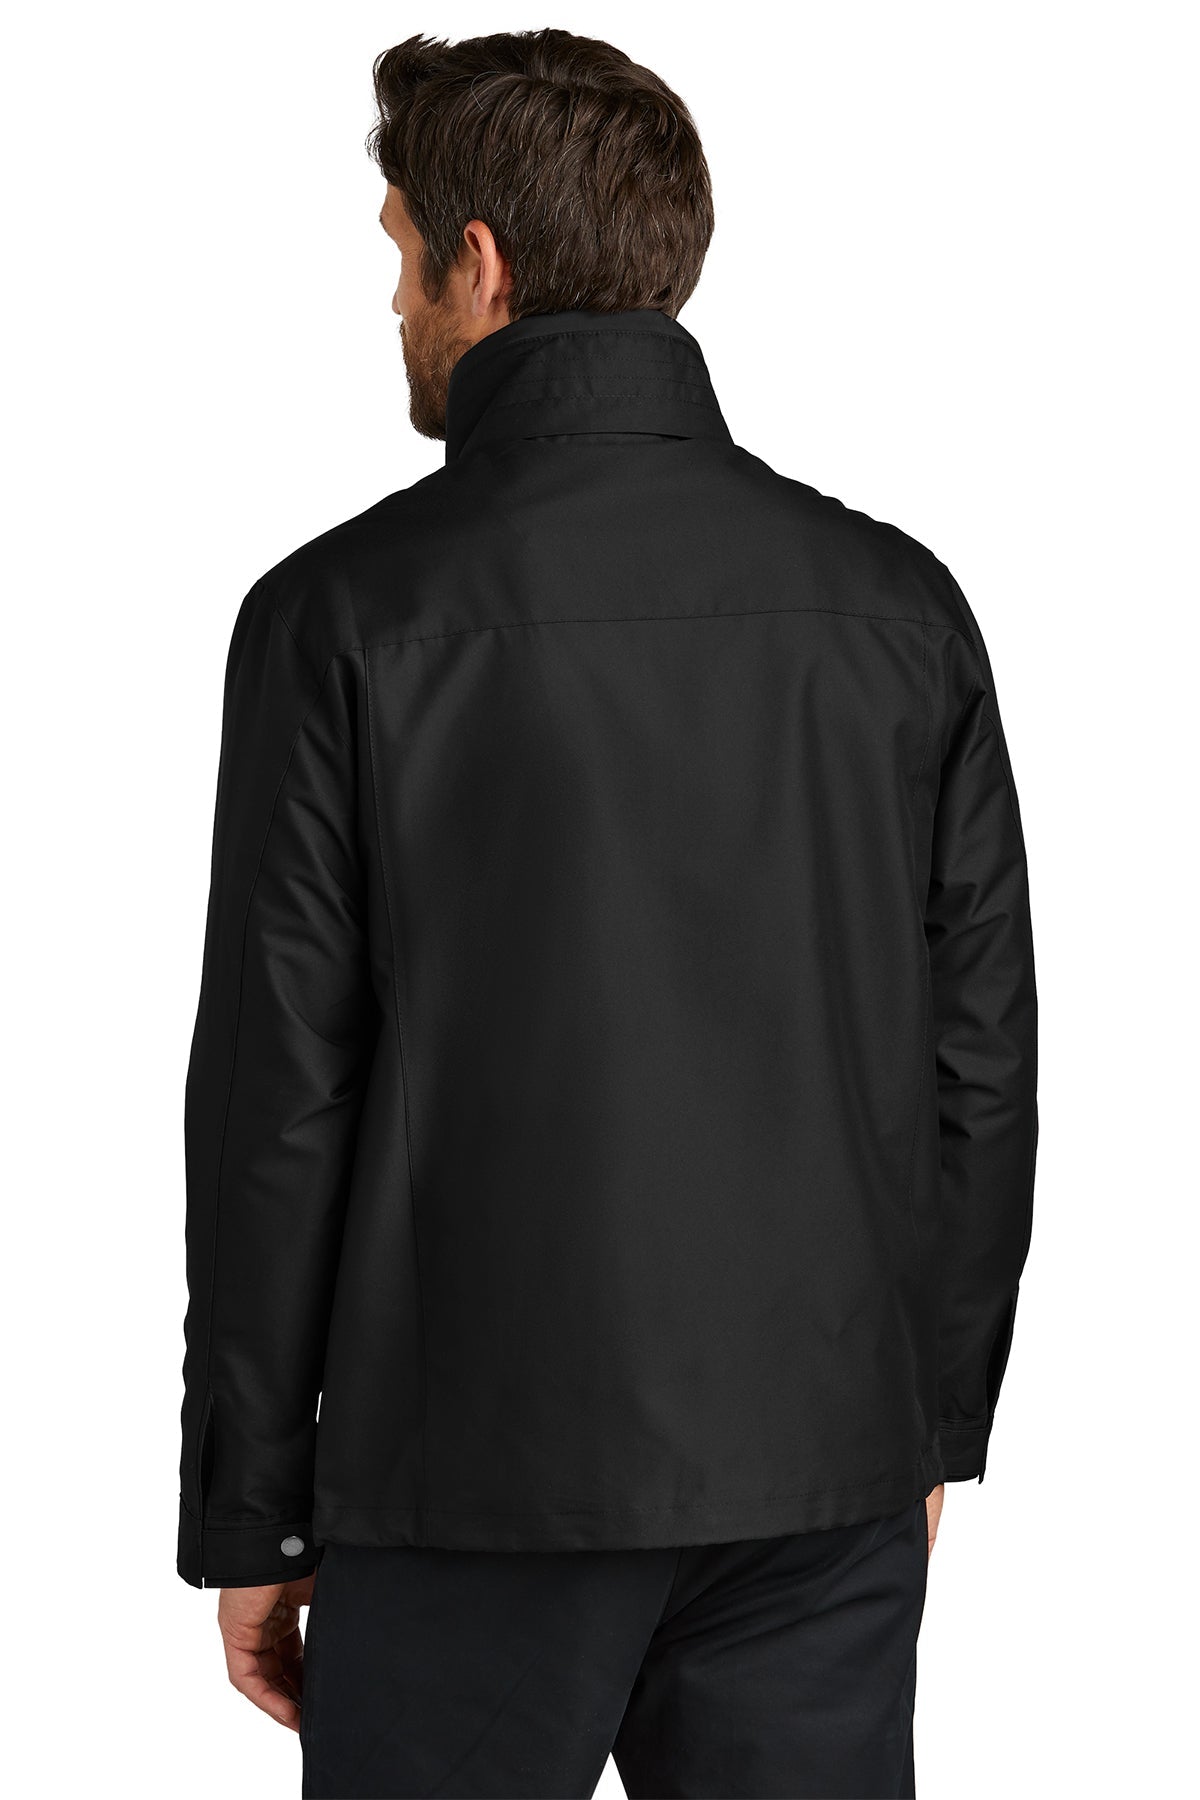 port authority_j701 _black_company_logo_jackets